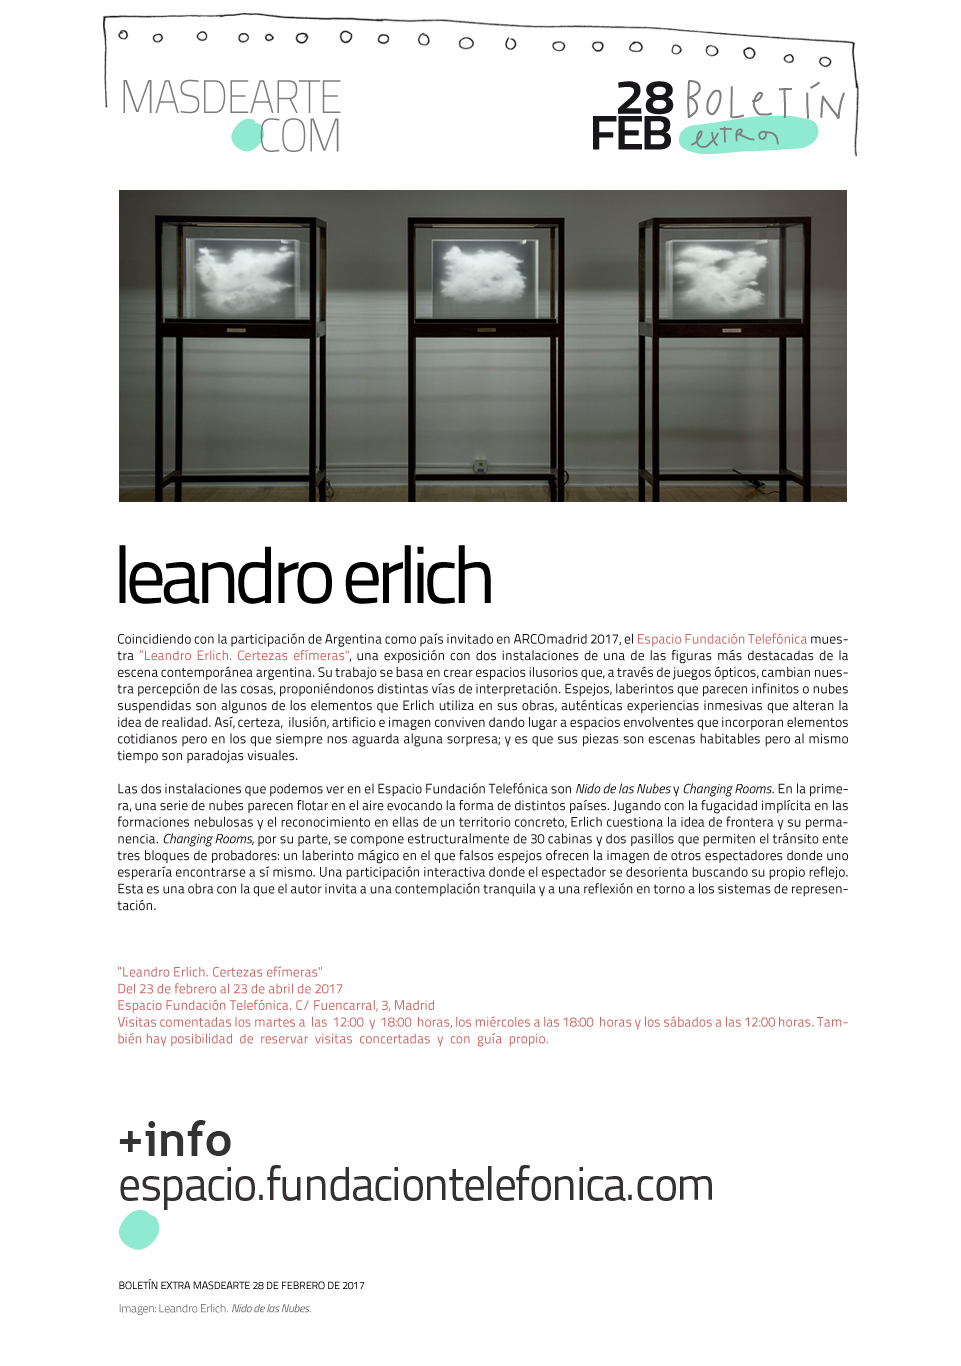 Leandro Erlich. Certeza efímeras, en el Fundación Telefónica
 hasta el 23 de abril de 2017. Nido de las nubes y Changing Rooms.